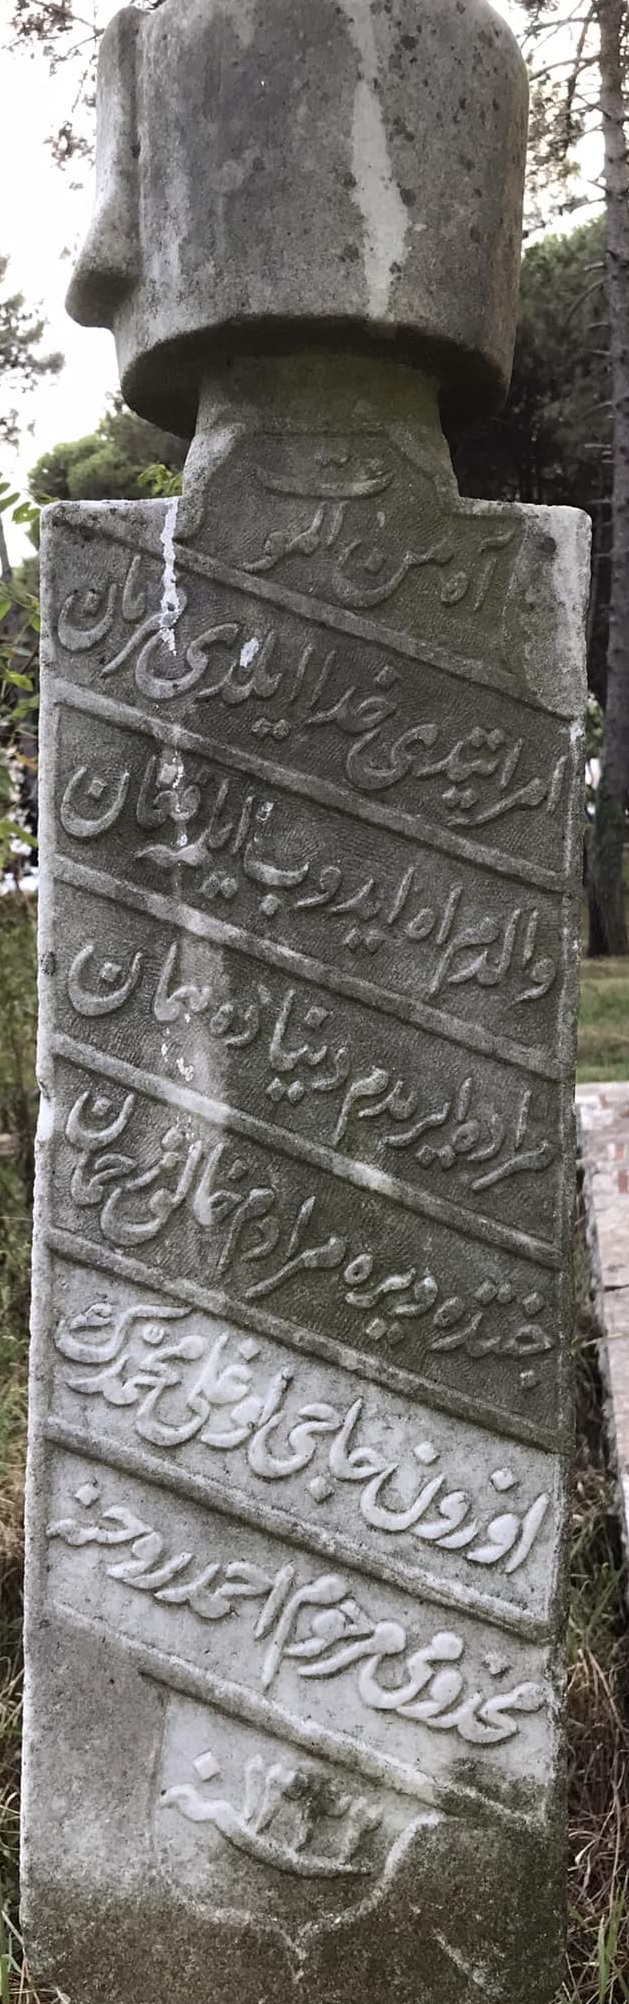 Ahmed Osmanlıca mezar taşı